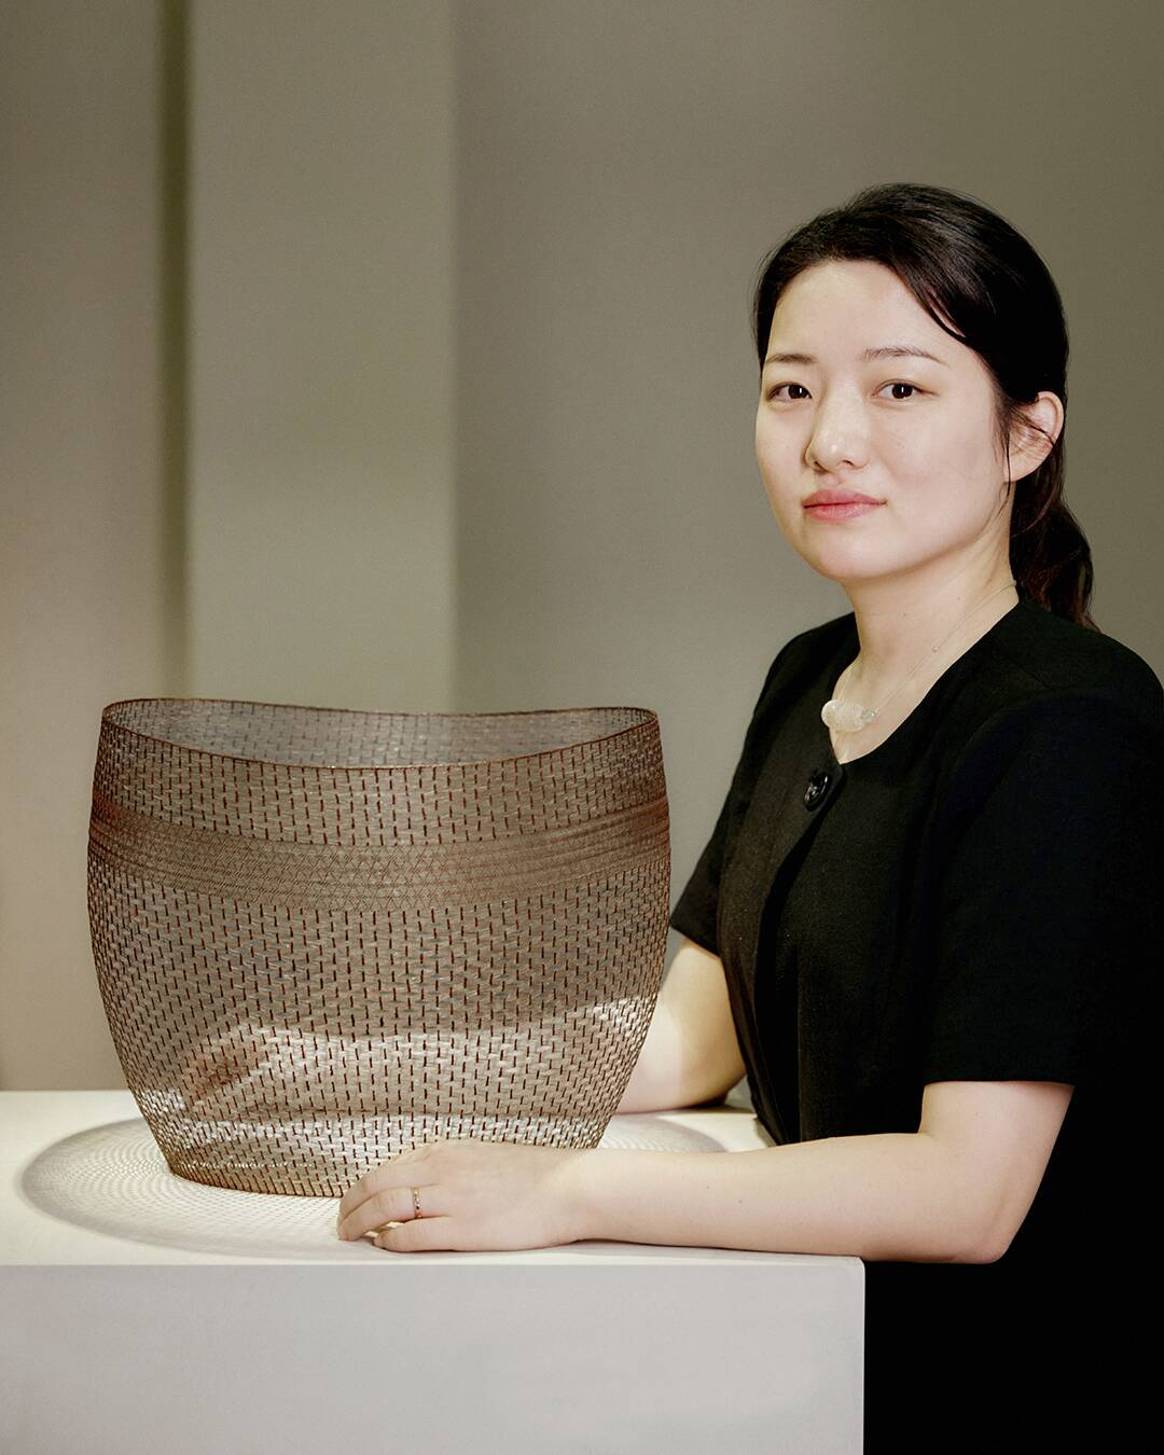 Image: Loewe Foundation Craft Prize Winner Dahye Jeong